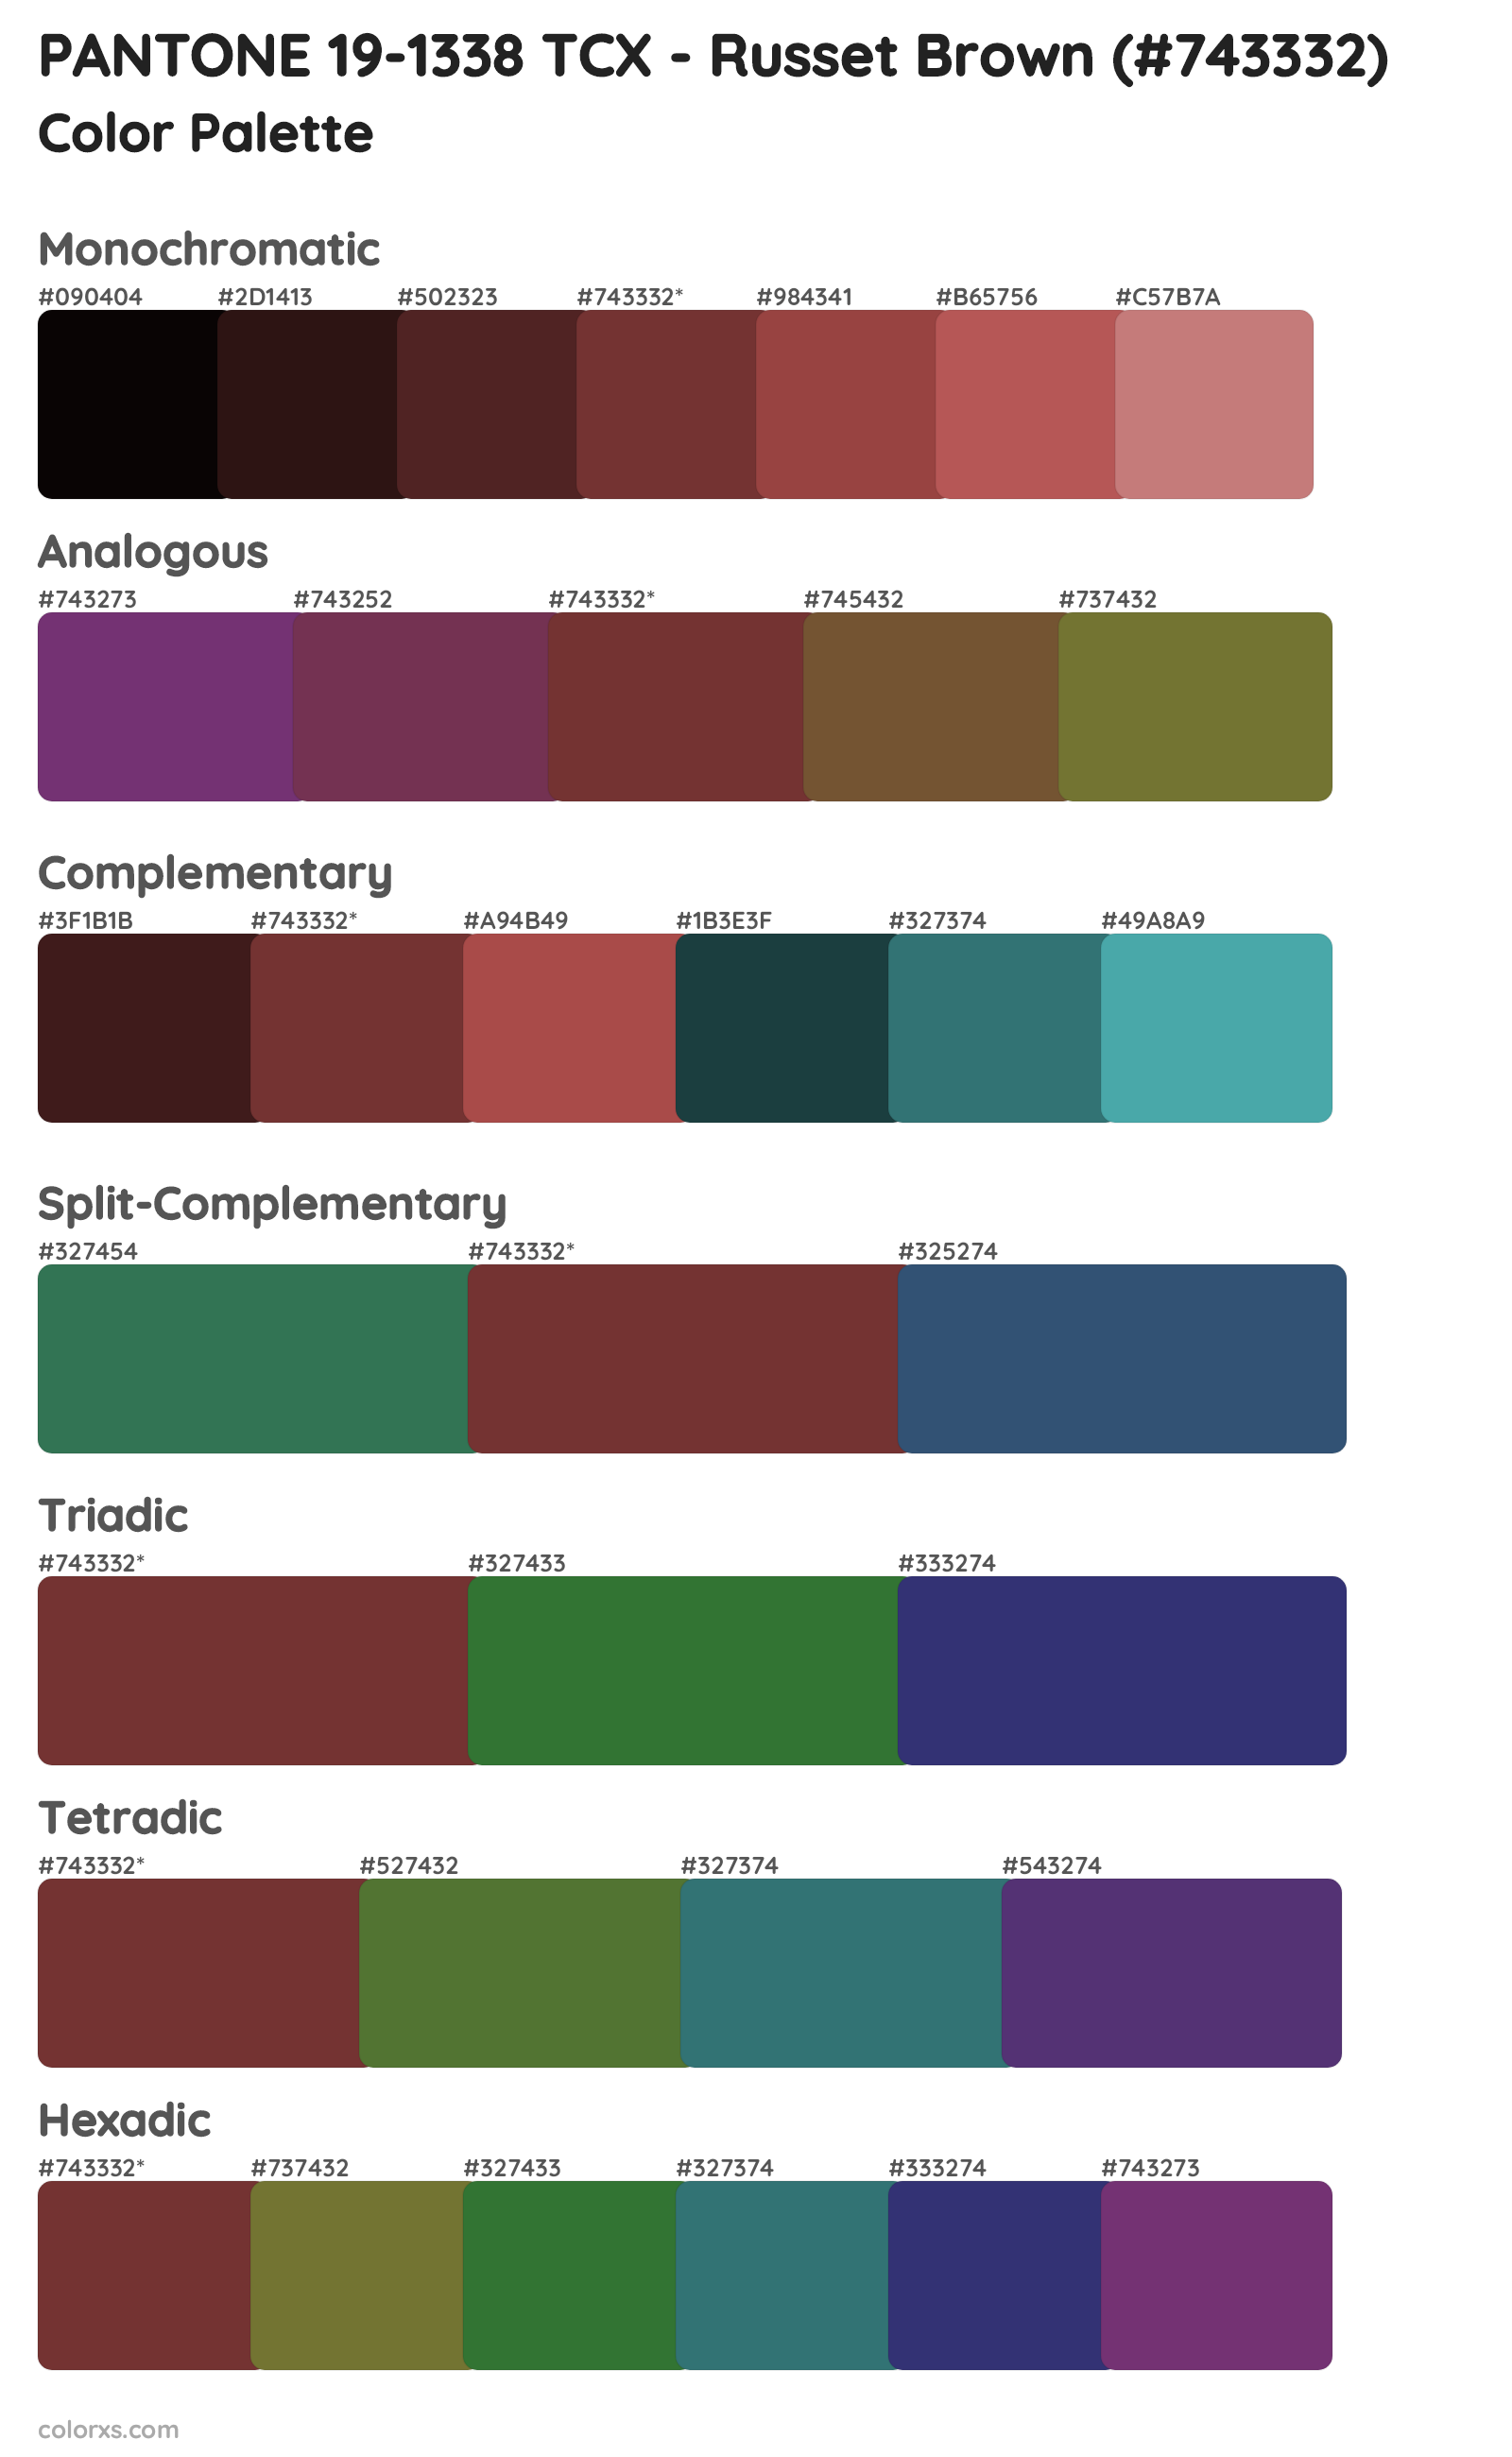 PANTONE 19-1338 TCX - Russet Brown Color Scheme Palettes